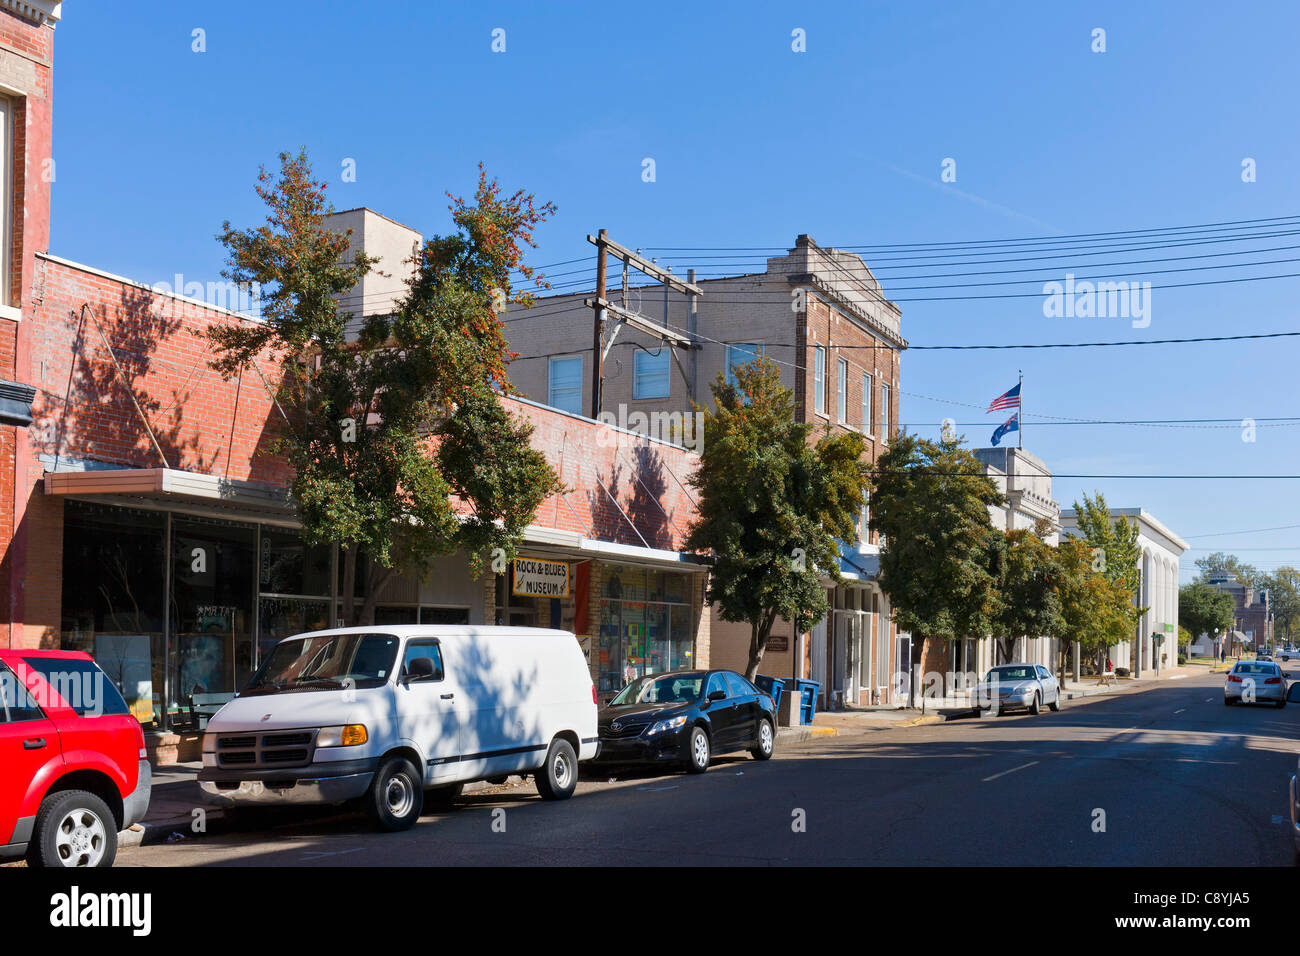 Visualizza in basso la seconda strada nel quartiere storico con il rock e Blues Museum a sinistra, Clarksdale, Mississippi, STATI UNITI D'AMERICA Foto Stock